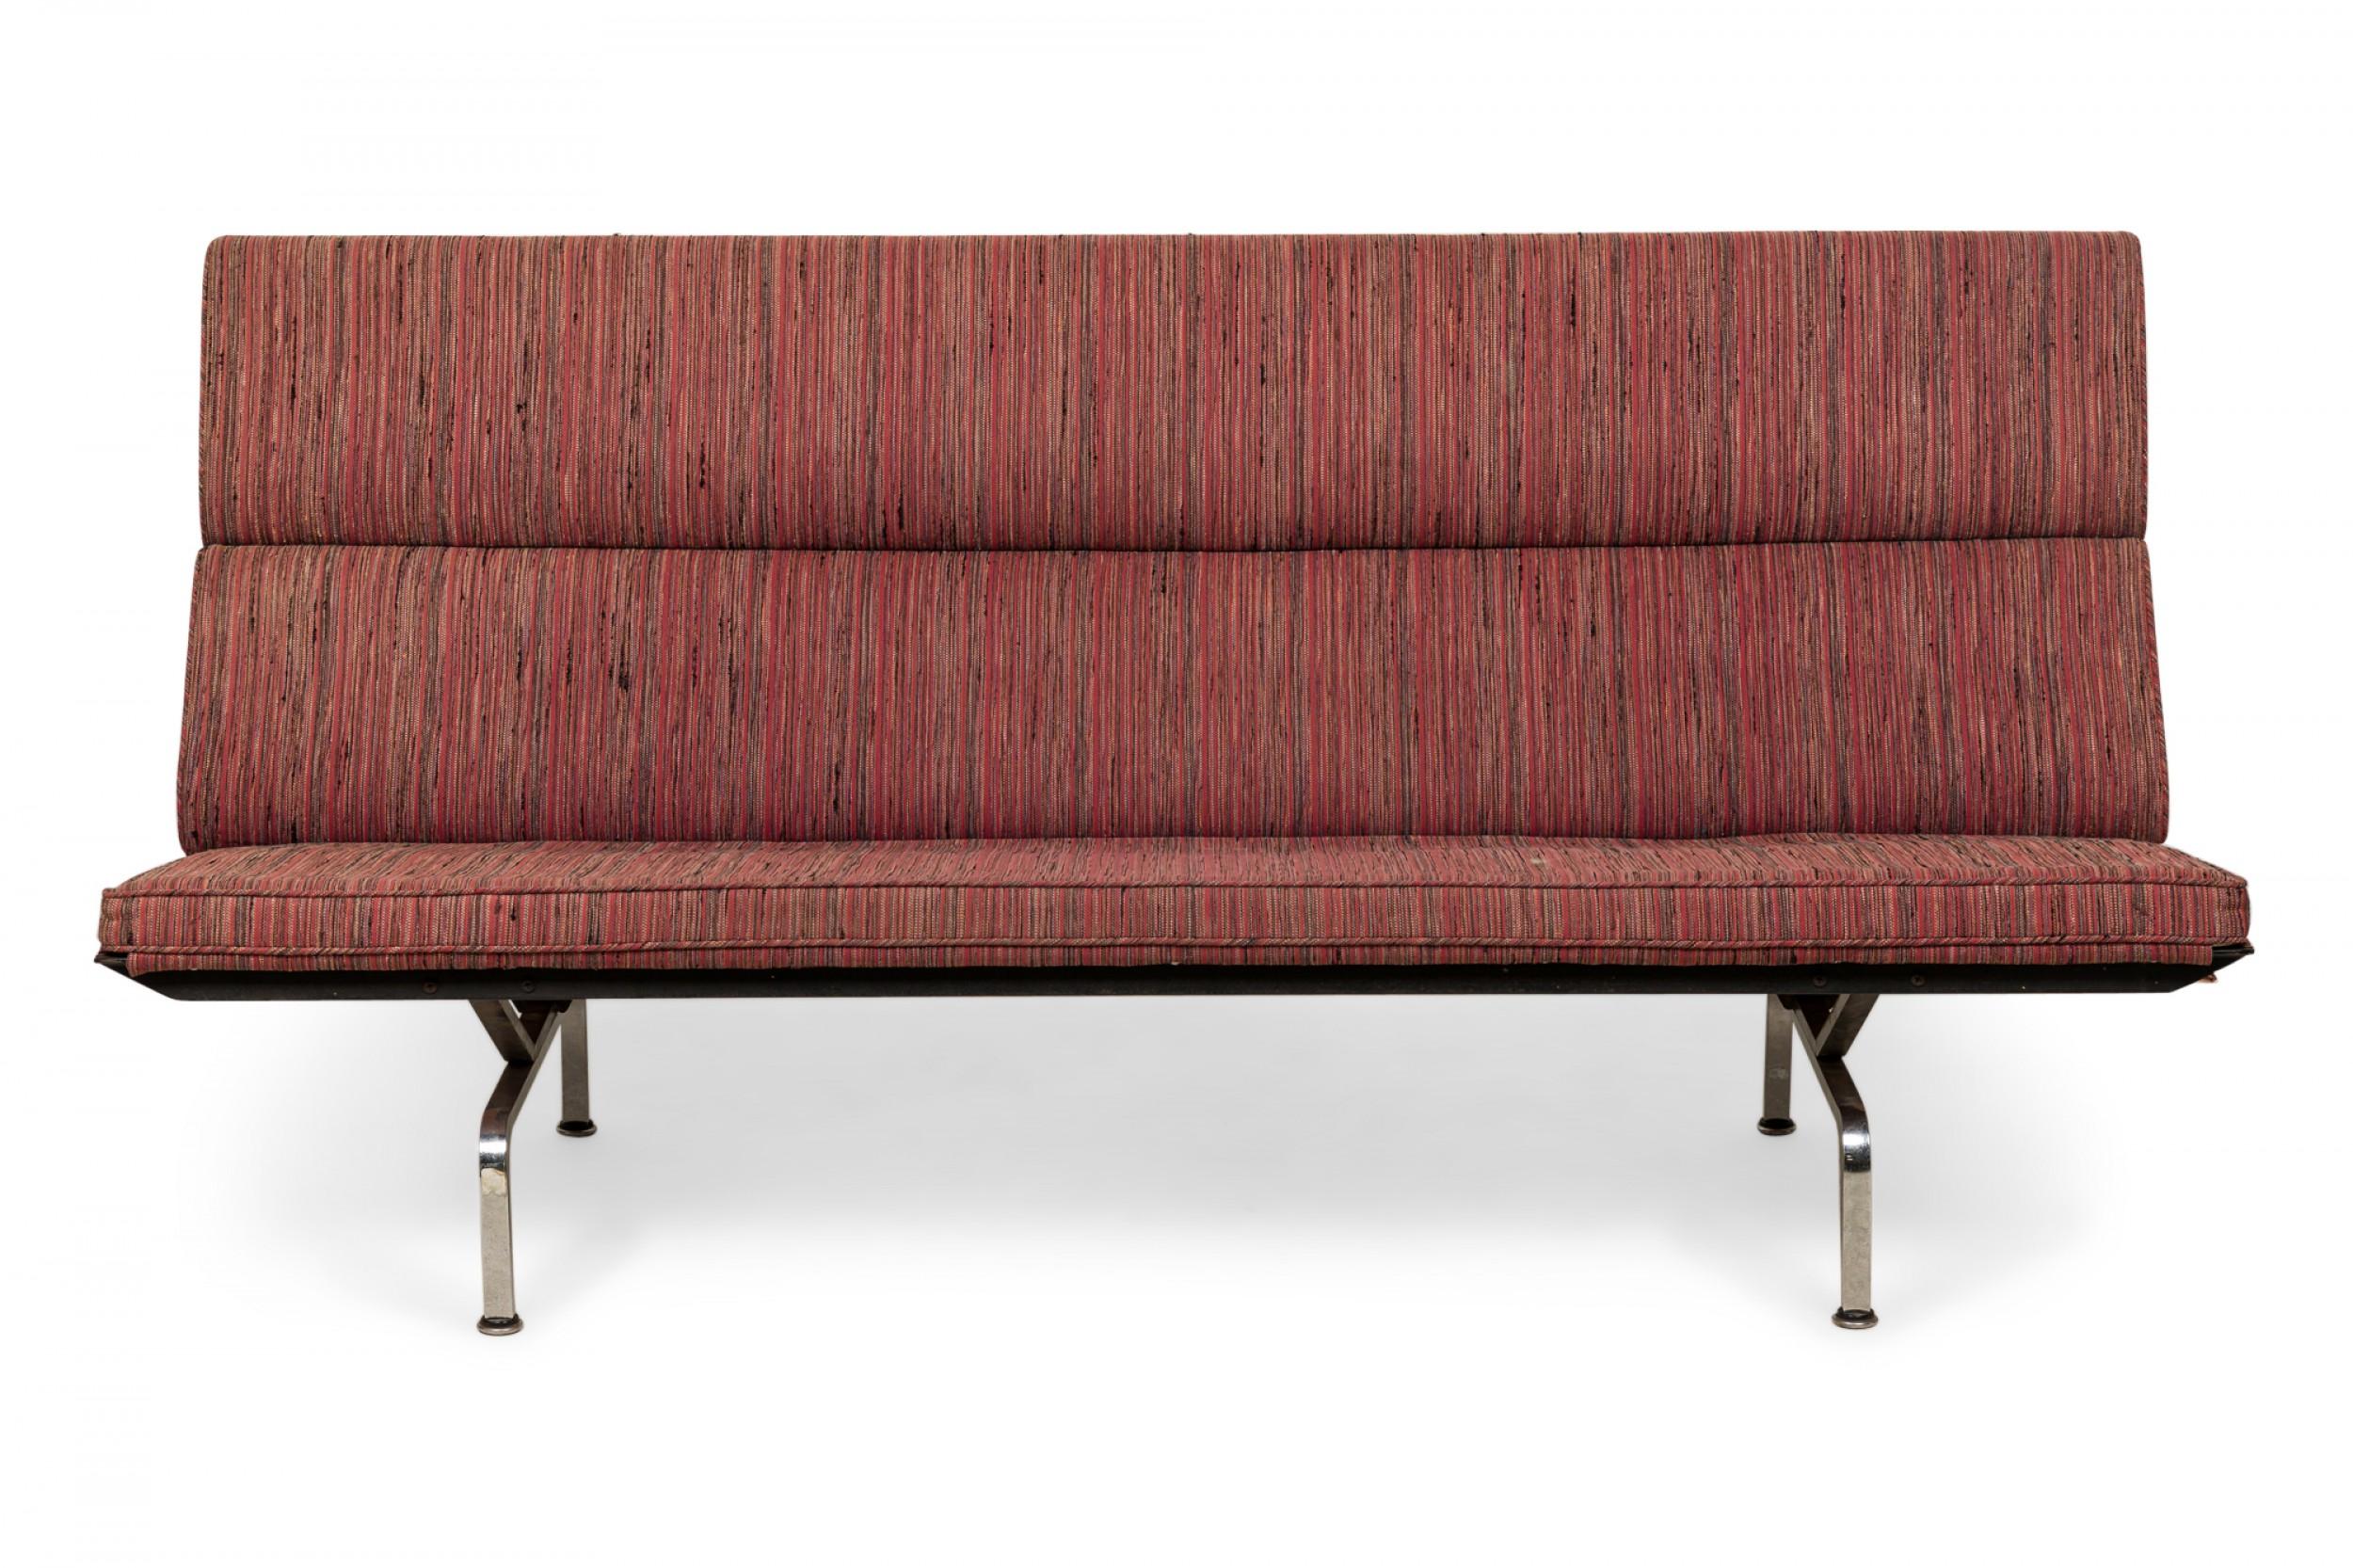 Amerikanisches Mid-Century-Klappsofa 'Sofa Compact' mit roten, rosa und orangefarbenen, vertikal gestreiften Polsterkissen auf vier geschwungenen Chrombeinen. (Charles Eames für Herman Miller).
   